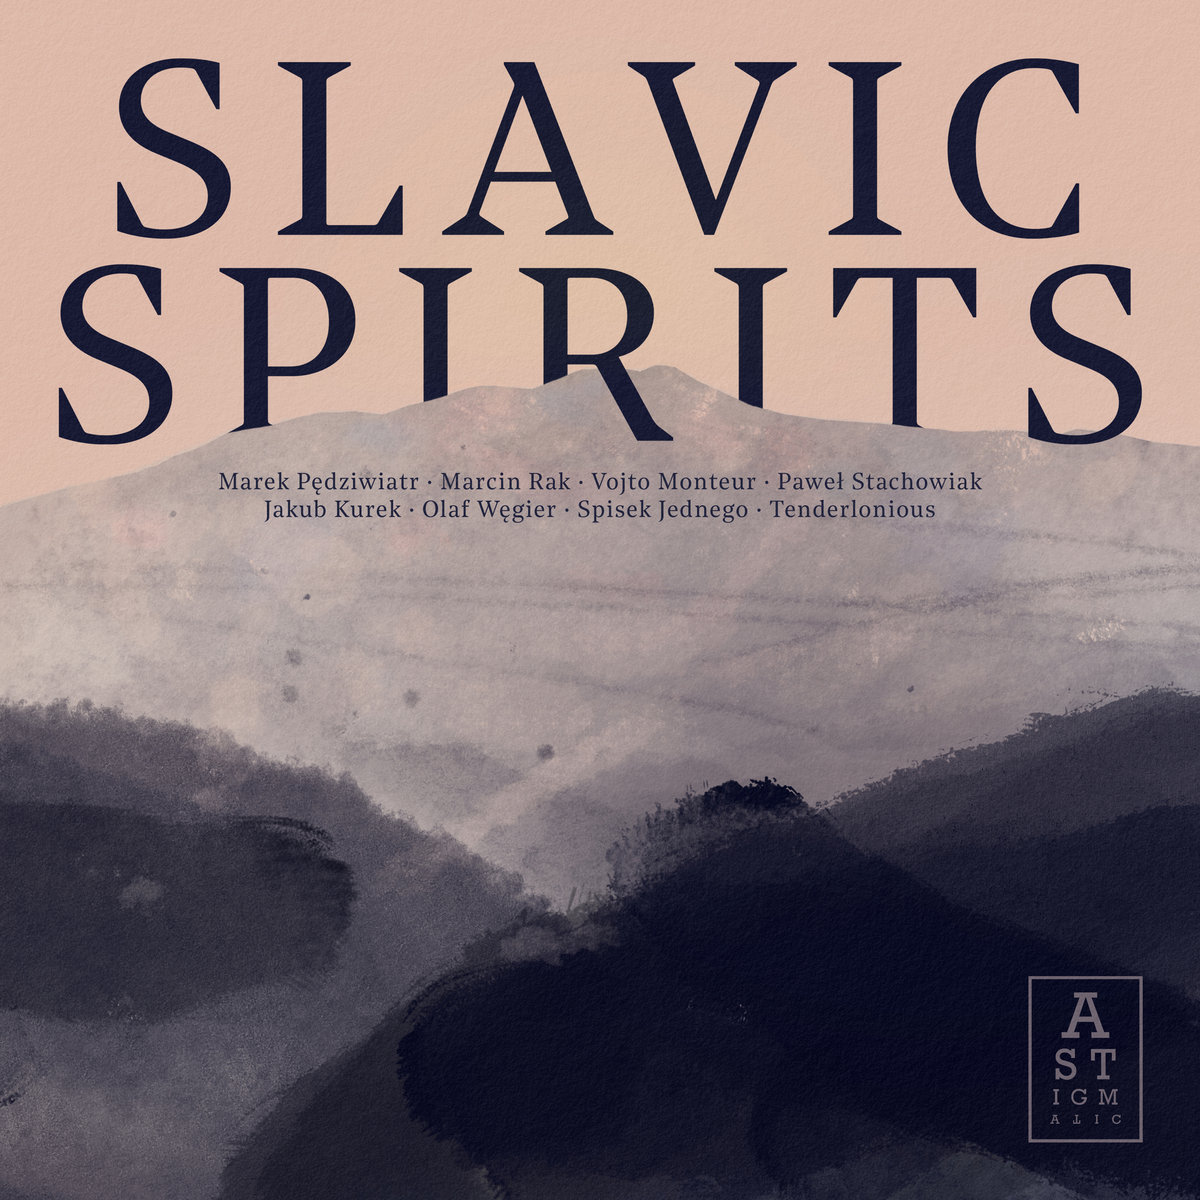 EABS - Slavic Spirits